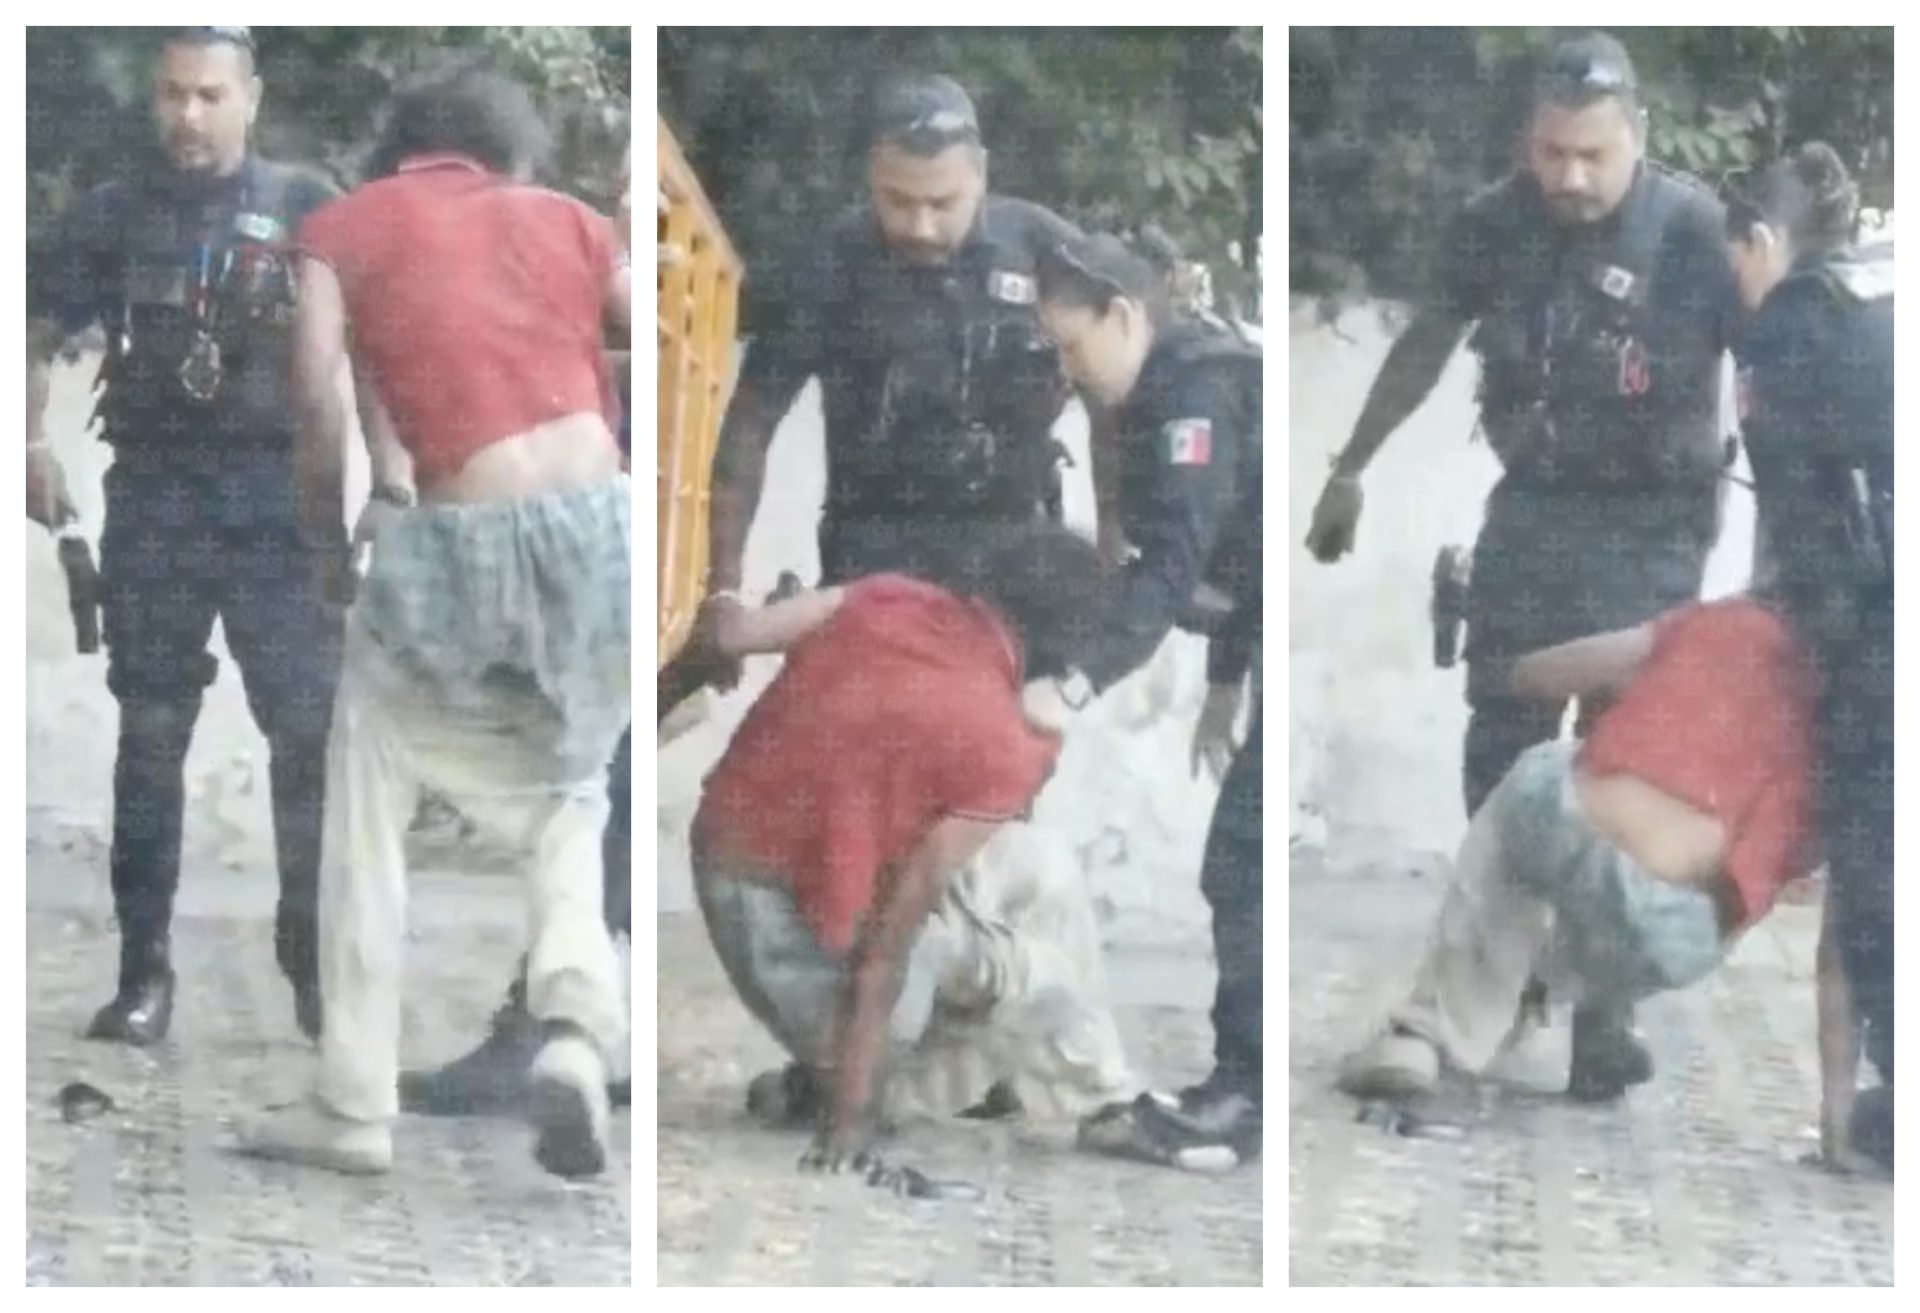 Captan a policías de Guadalajara abusando y golpeando a indigente; van por  su cese - Tráfico ZMG